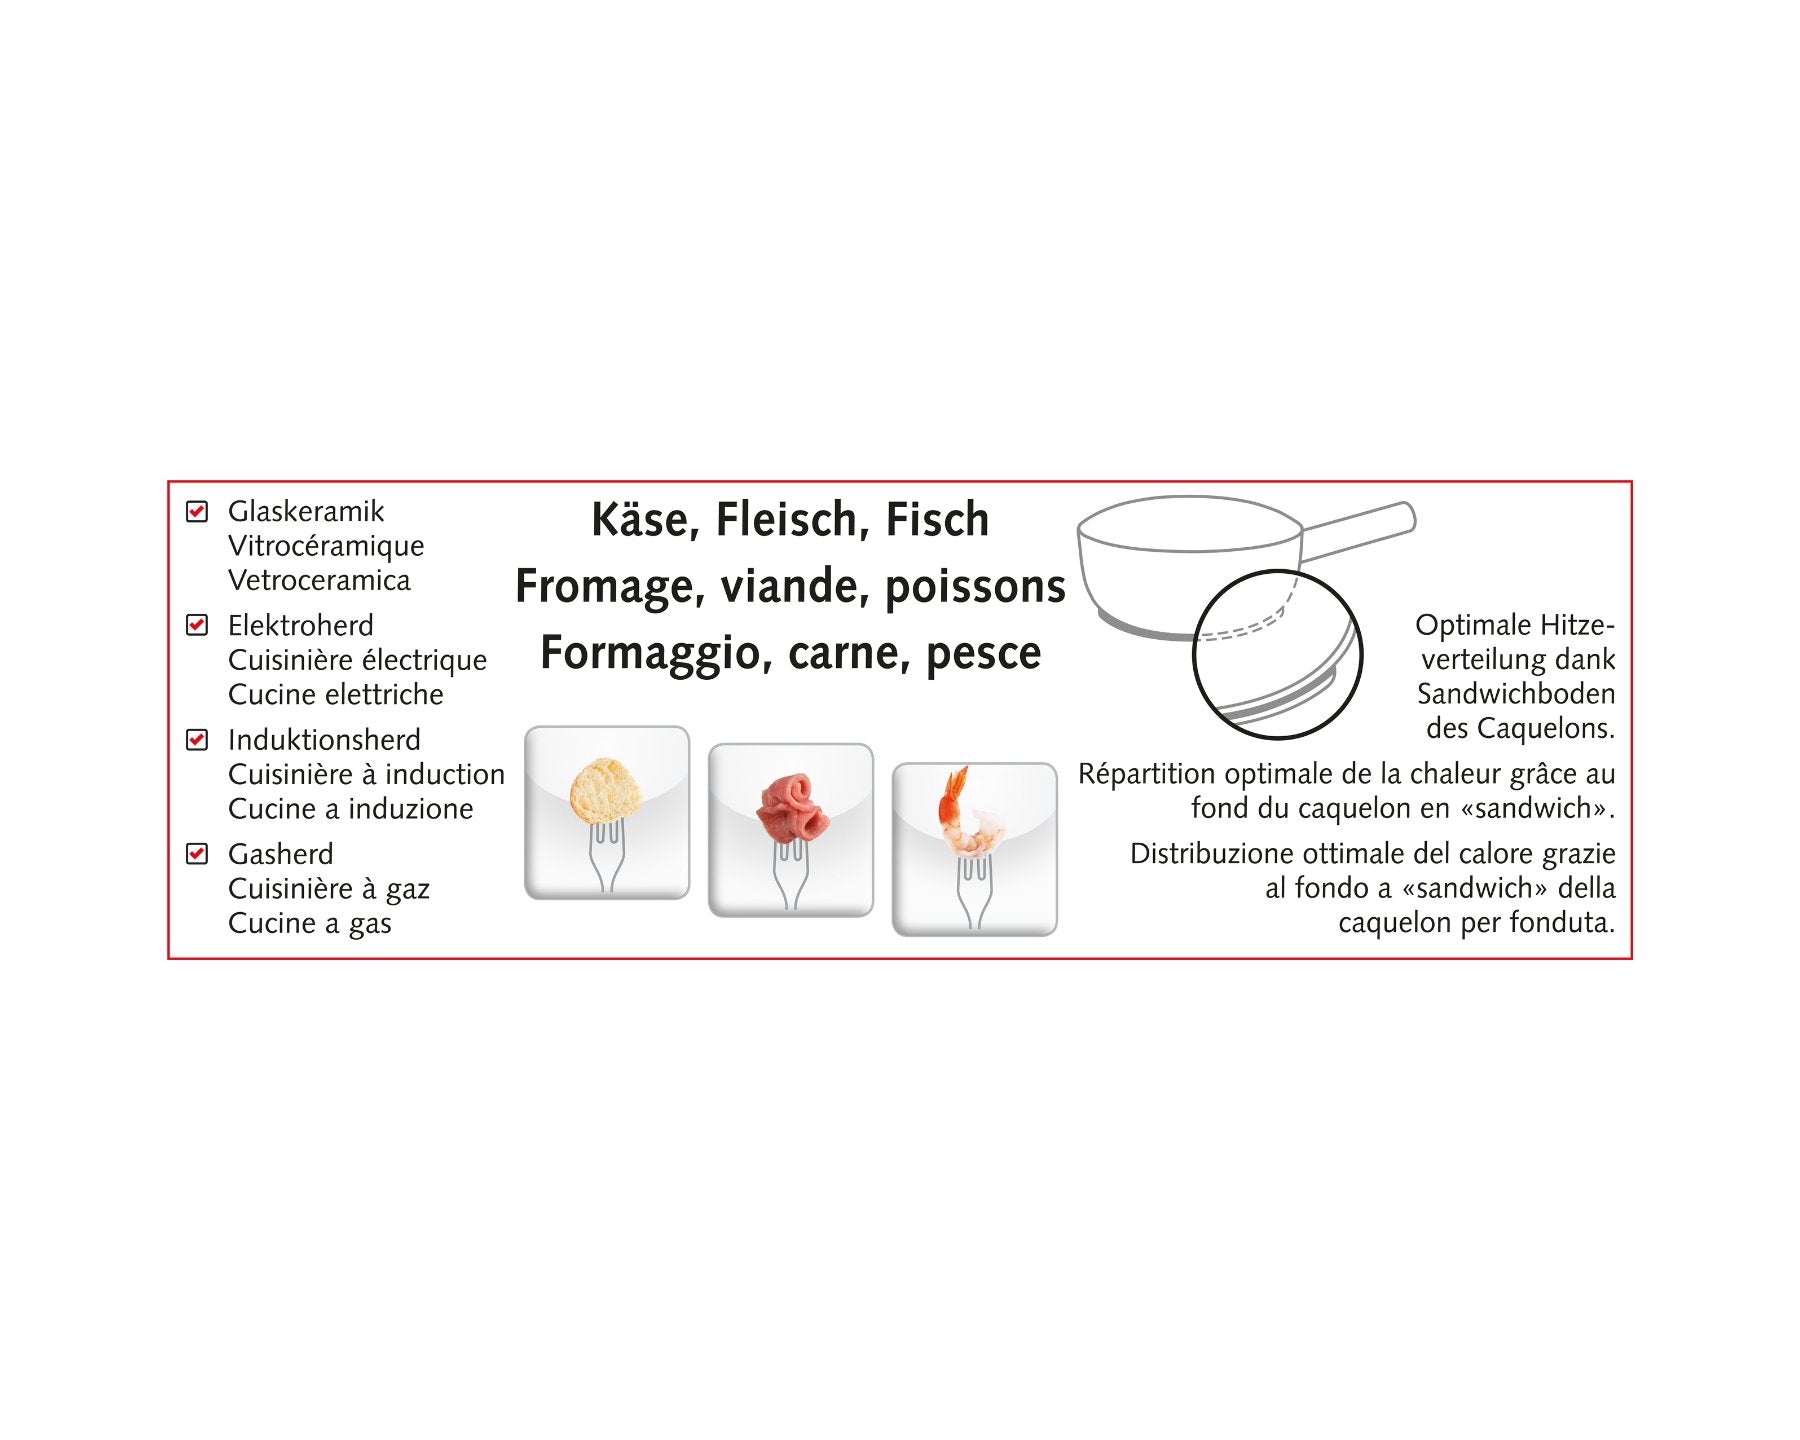 KOENIG Fondue-Set One for All - kitchen-more.ch, kostenloser Versand in der ganzen Schweiz